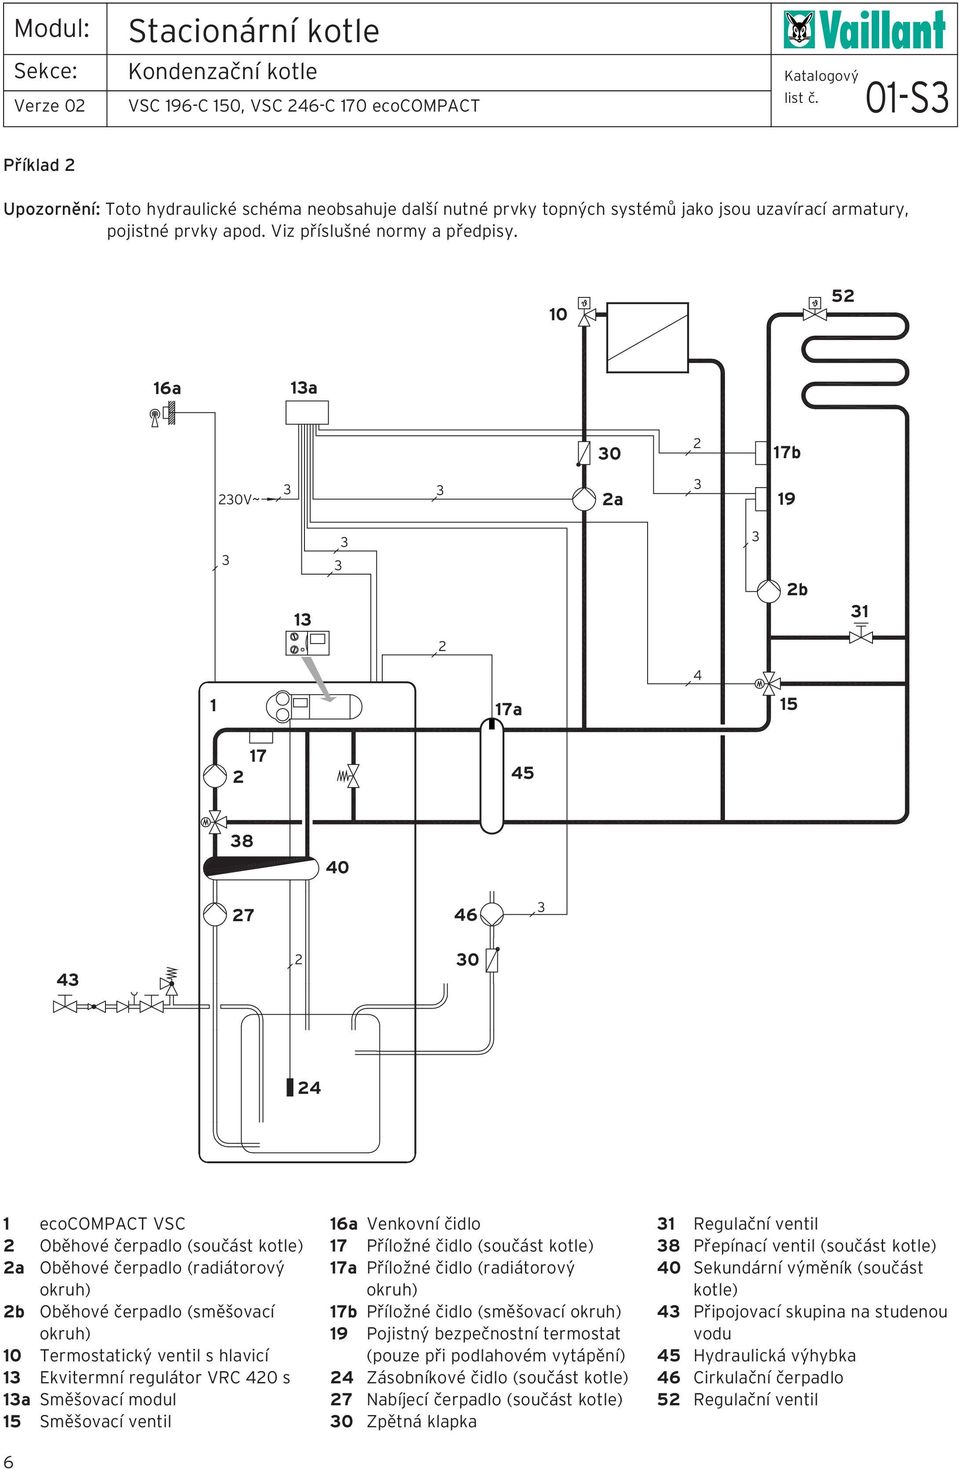 0 a a 0 b 0V~ a 9 b a 8 0 0 ecocompact VSC Oběhové čerpadlo (součást kotle) a Oběhové čerpadlo (radiátorový okruh) b Oběhové čerpadlo (směšovací okruh) 0 Termostatický ventil s hlavicí Ekvitermní